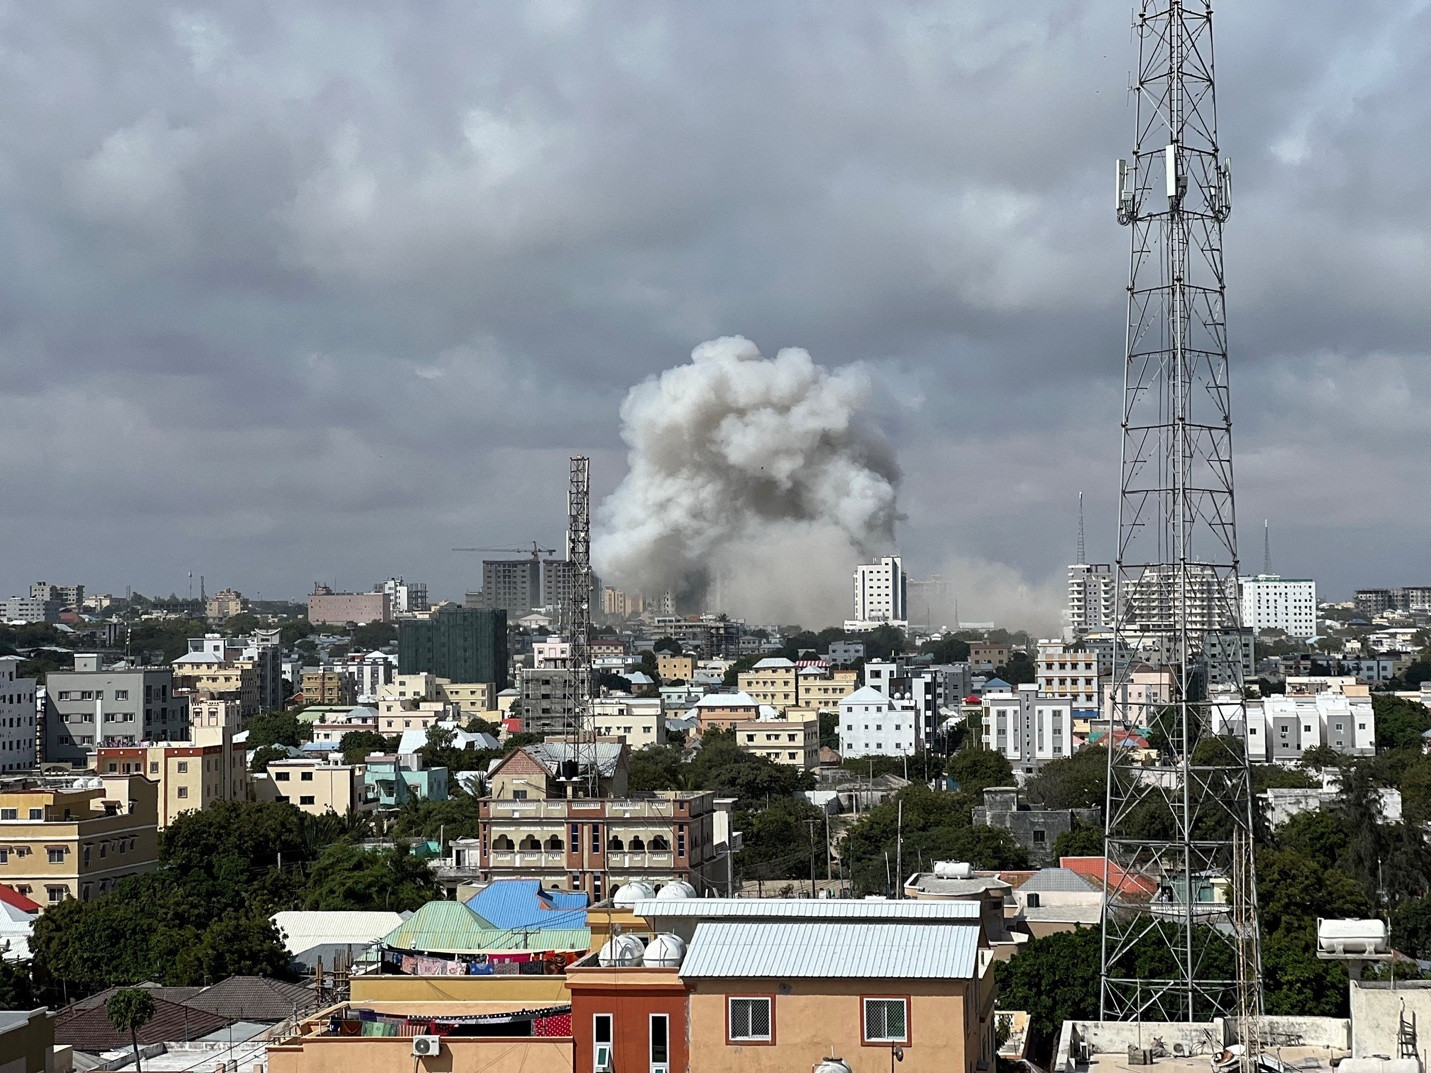 Đánh bom gần trụ sở Bộ Giáo dục Somalia, 100 người thiệt mạng - 2